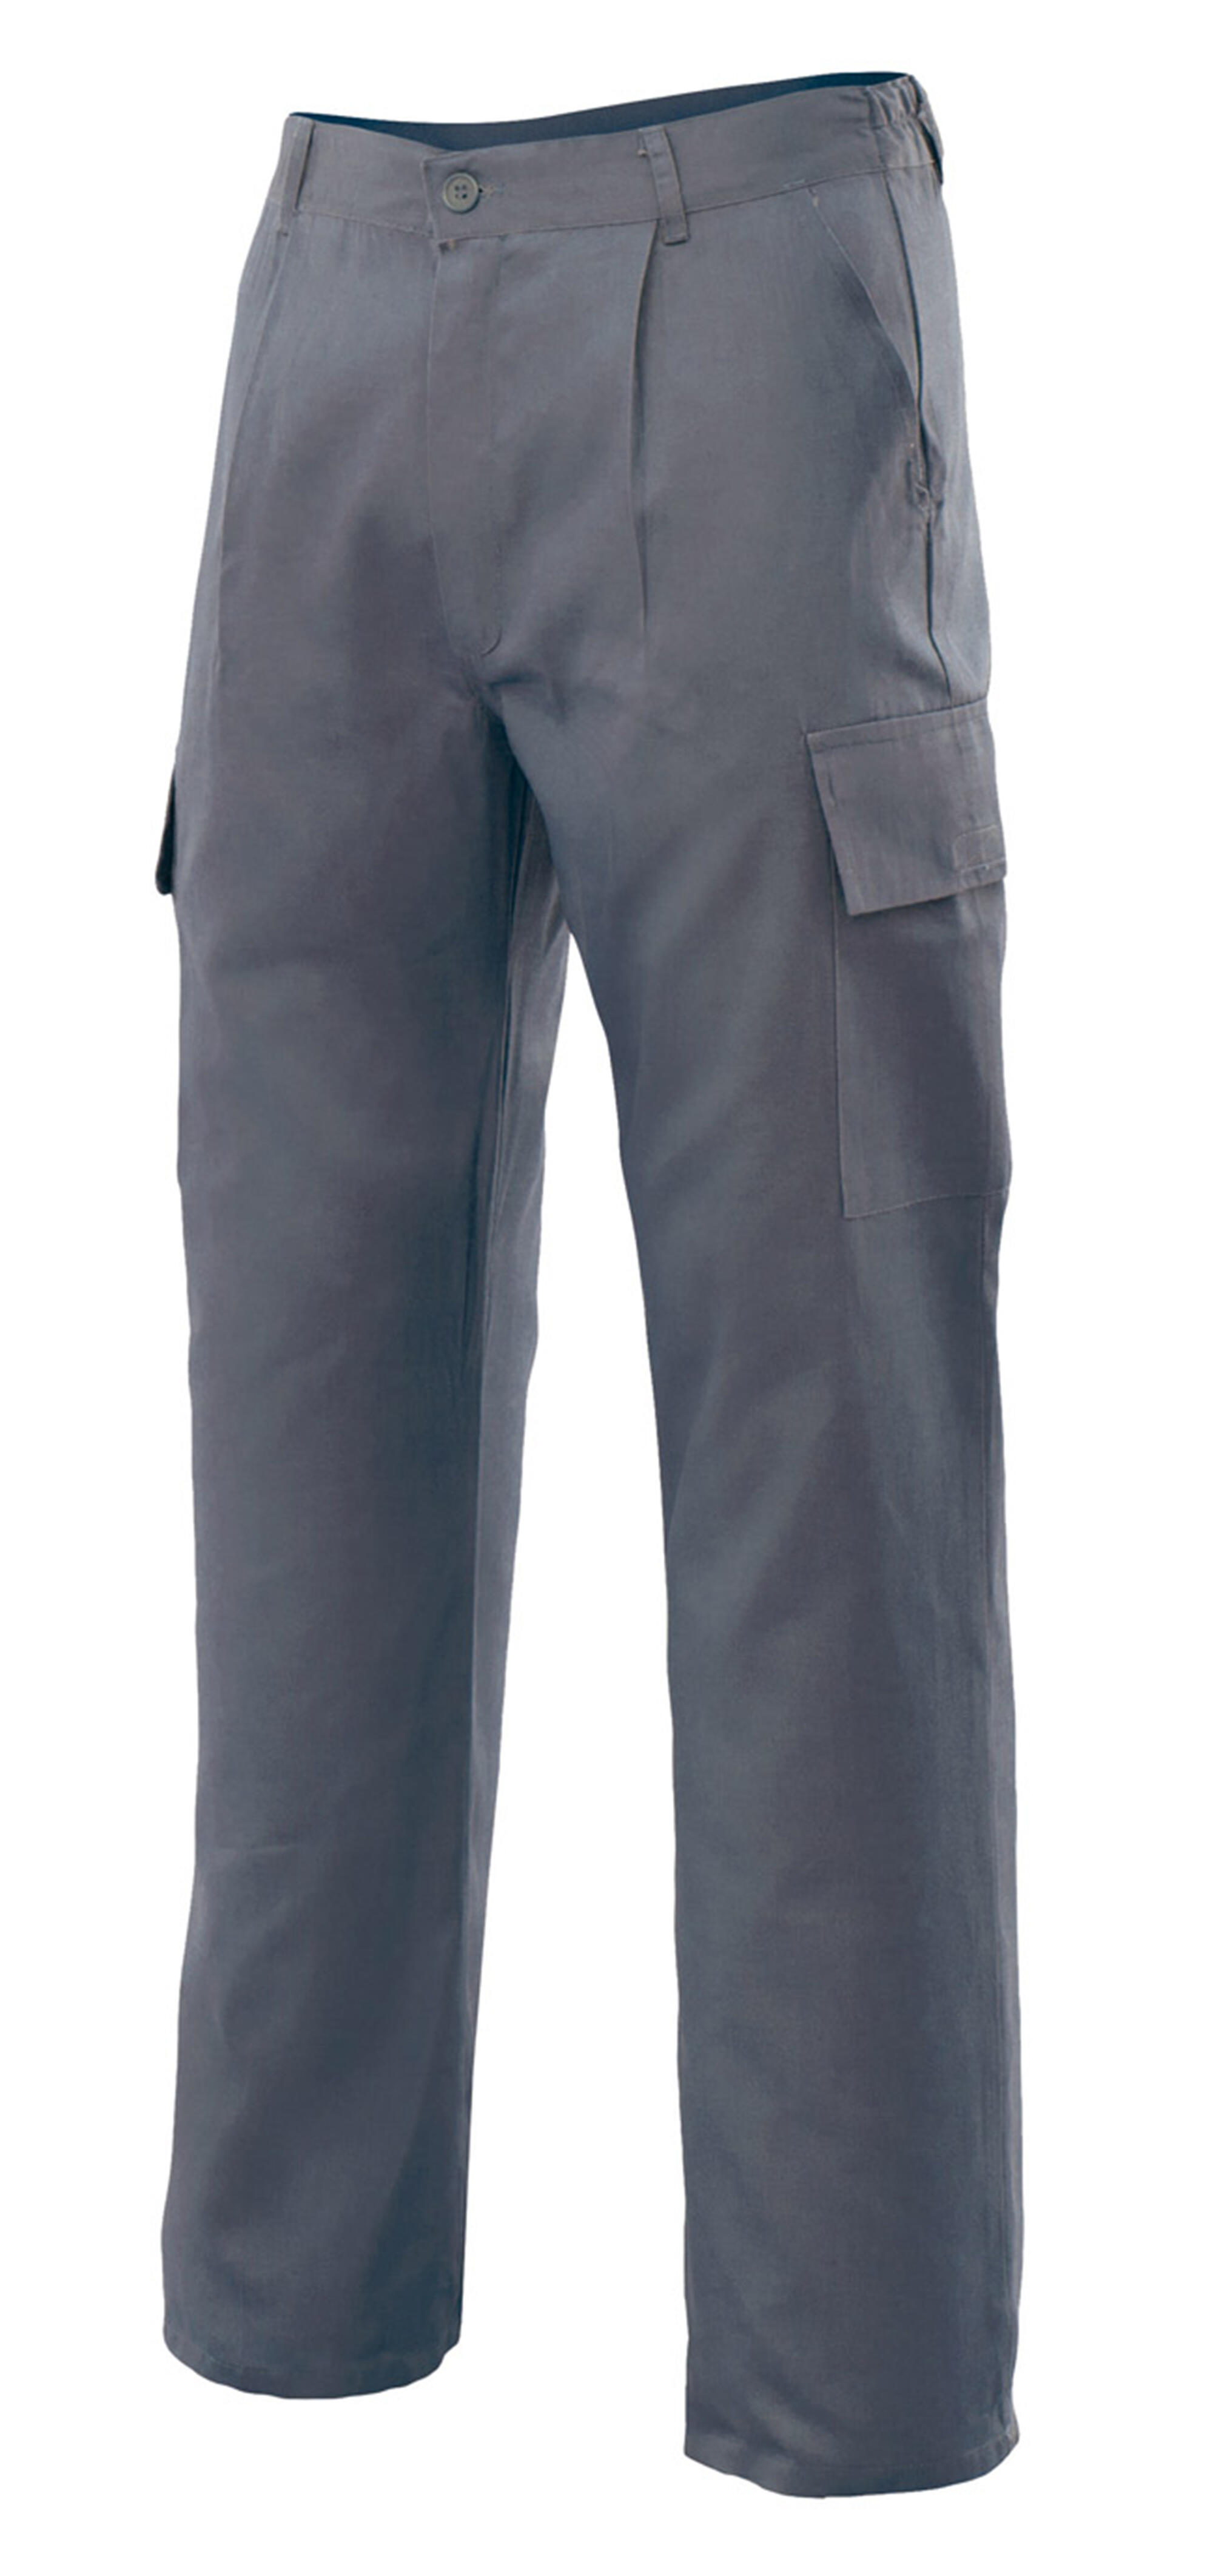 Pantalon de trabajo vertice multibolsillo gris t58